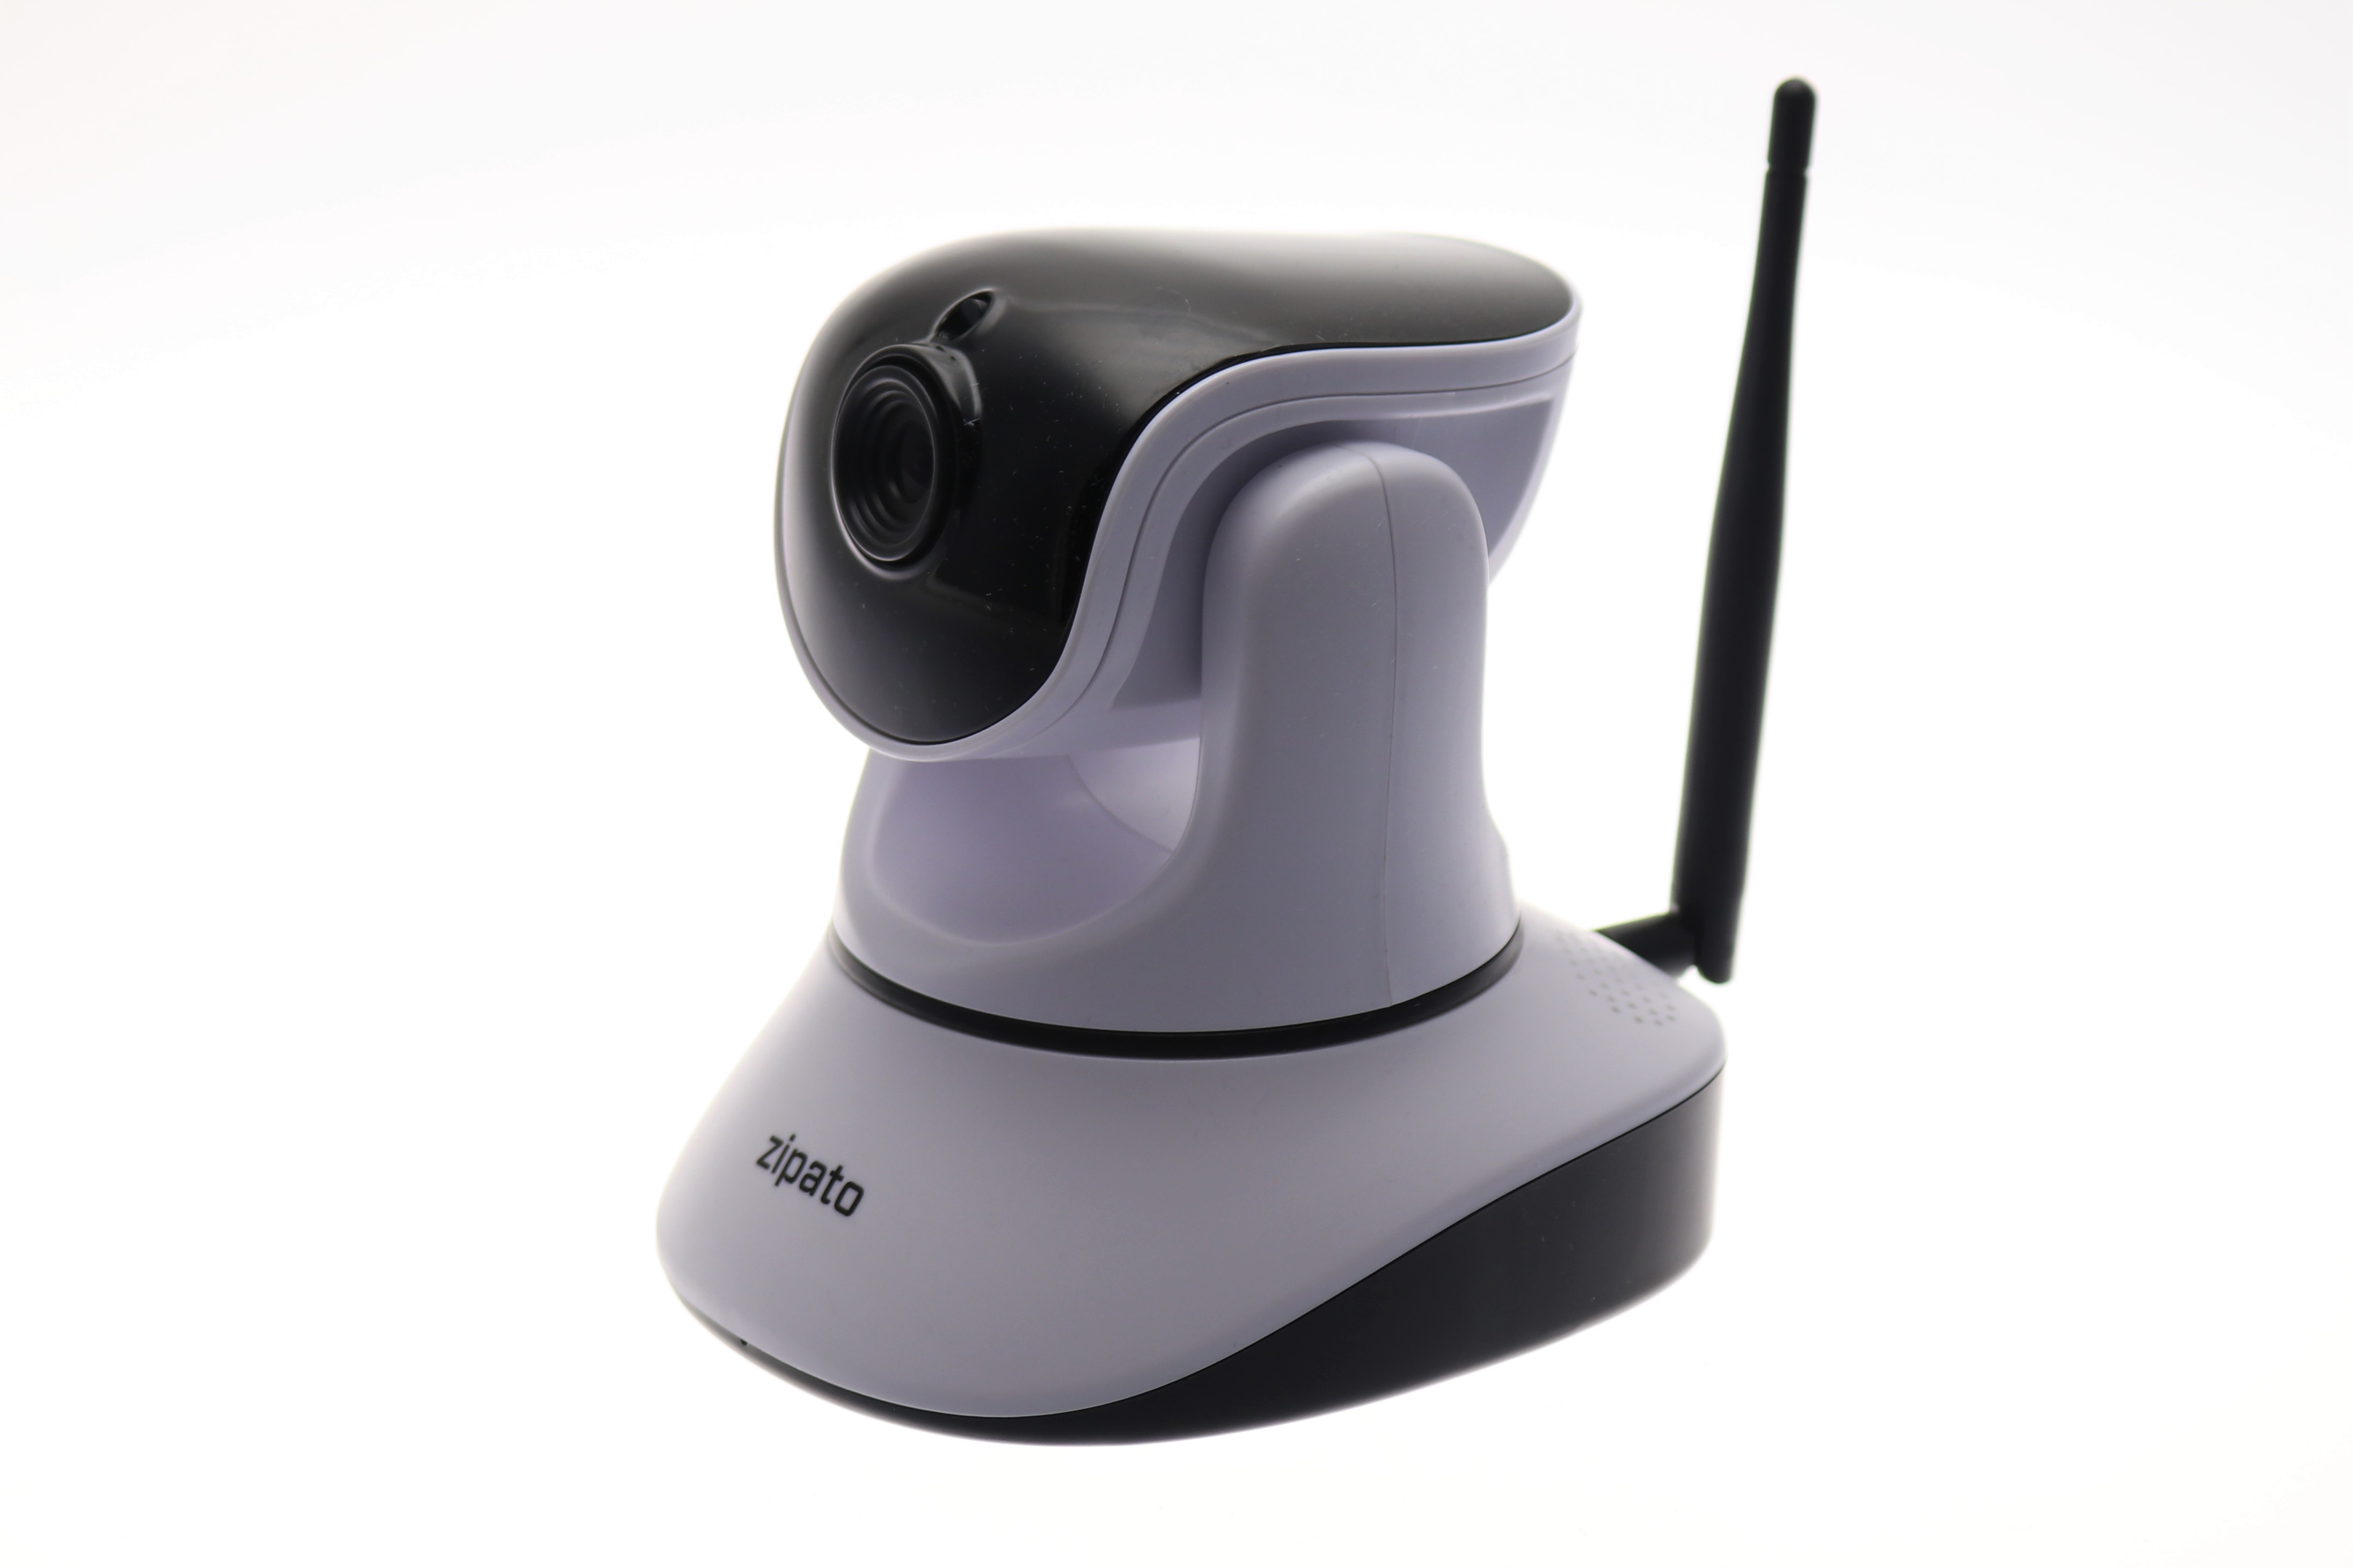 Zipato smart home Indoor PTZ IP Camera Wifi